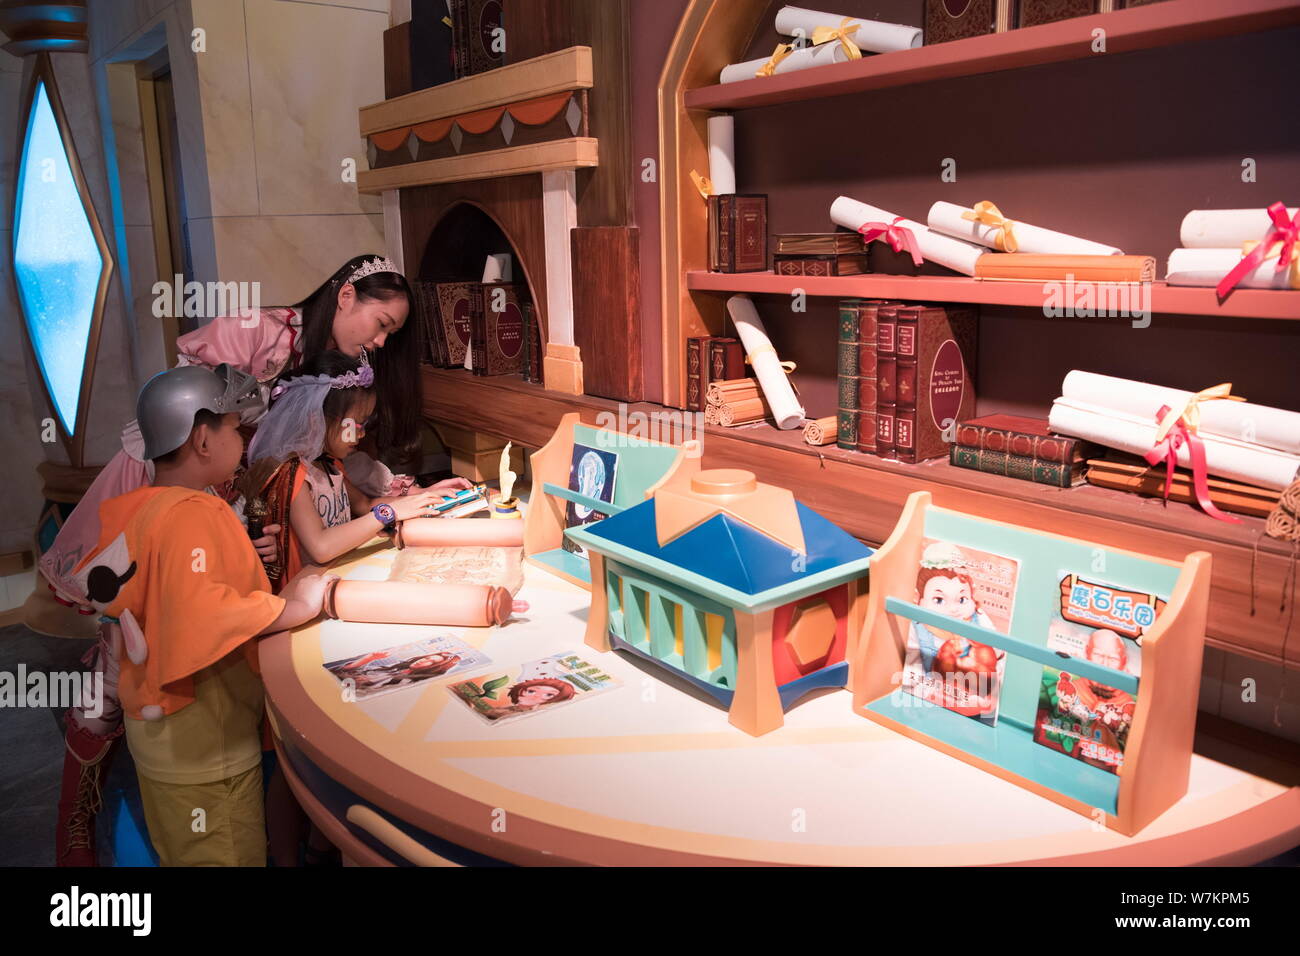 Die Spieler haben Spaß an dem Planeten J live-action-role-play Themenpark von Sands China im Sands Shoppes retail Mall in Cotai, Macau, China, 29. August 2017. Stockfoto